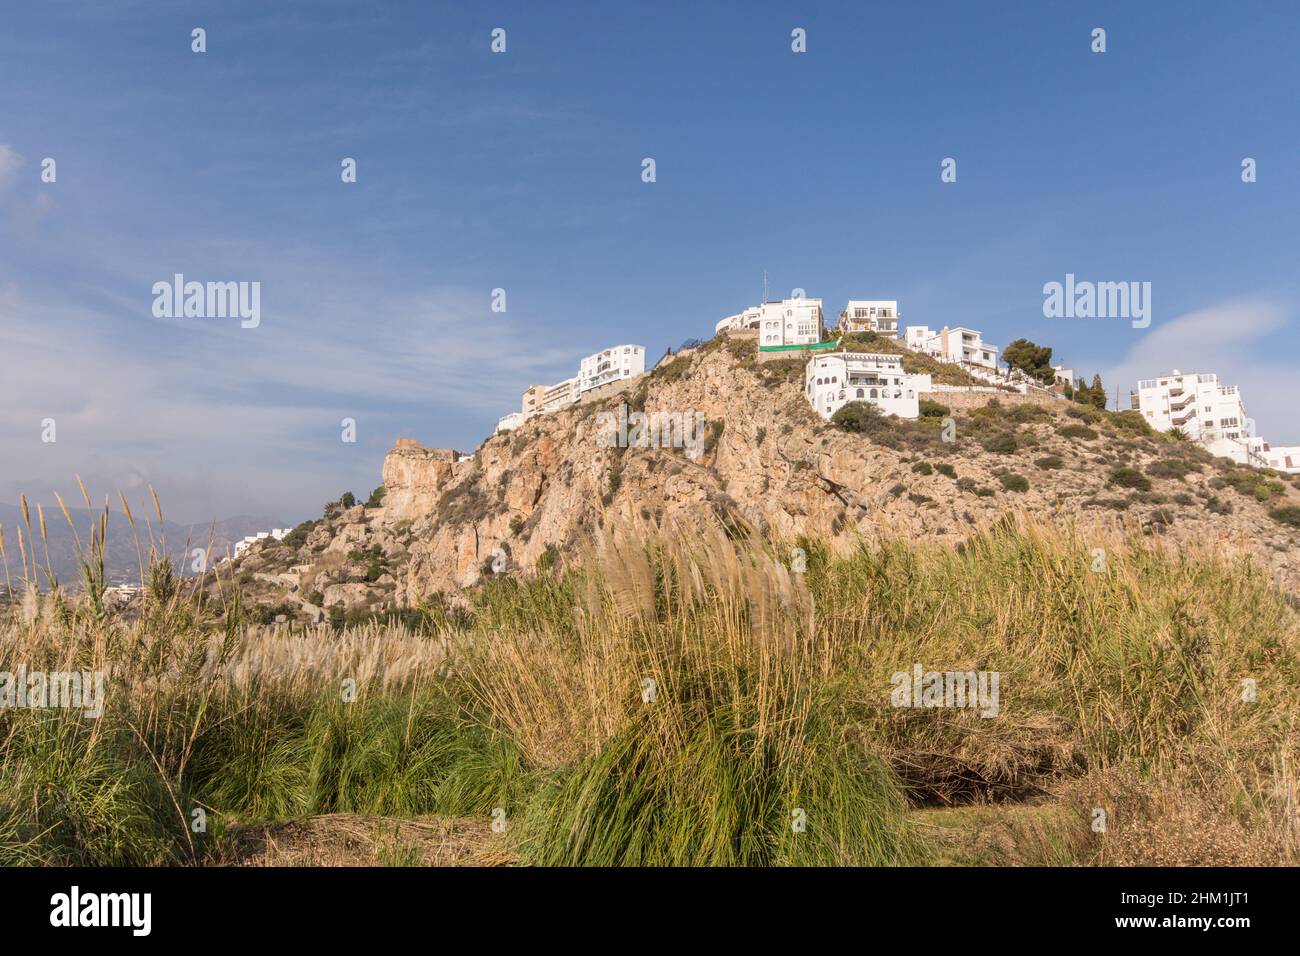 Die spanische Stadt Salobreña auf einem Hügel, mit maurischer Burg Costa Tropical, Granda, Spanien. Stockfoto